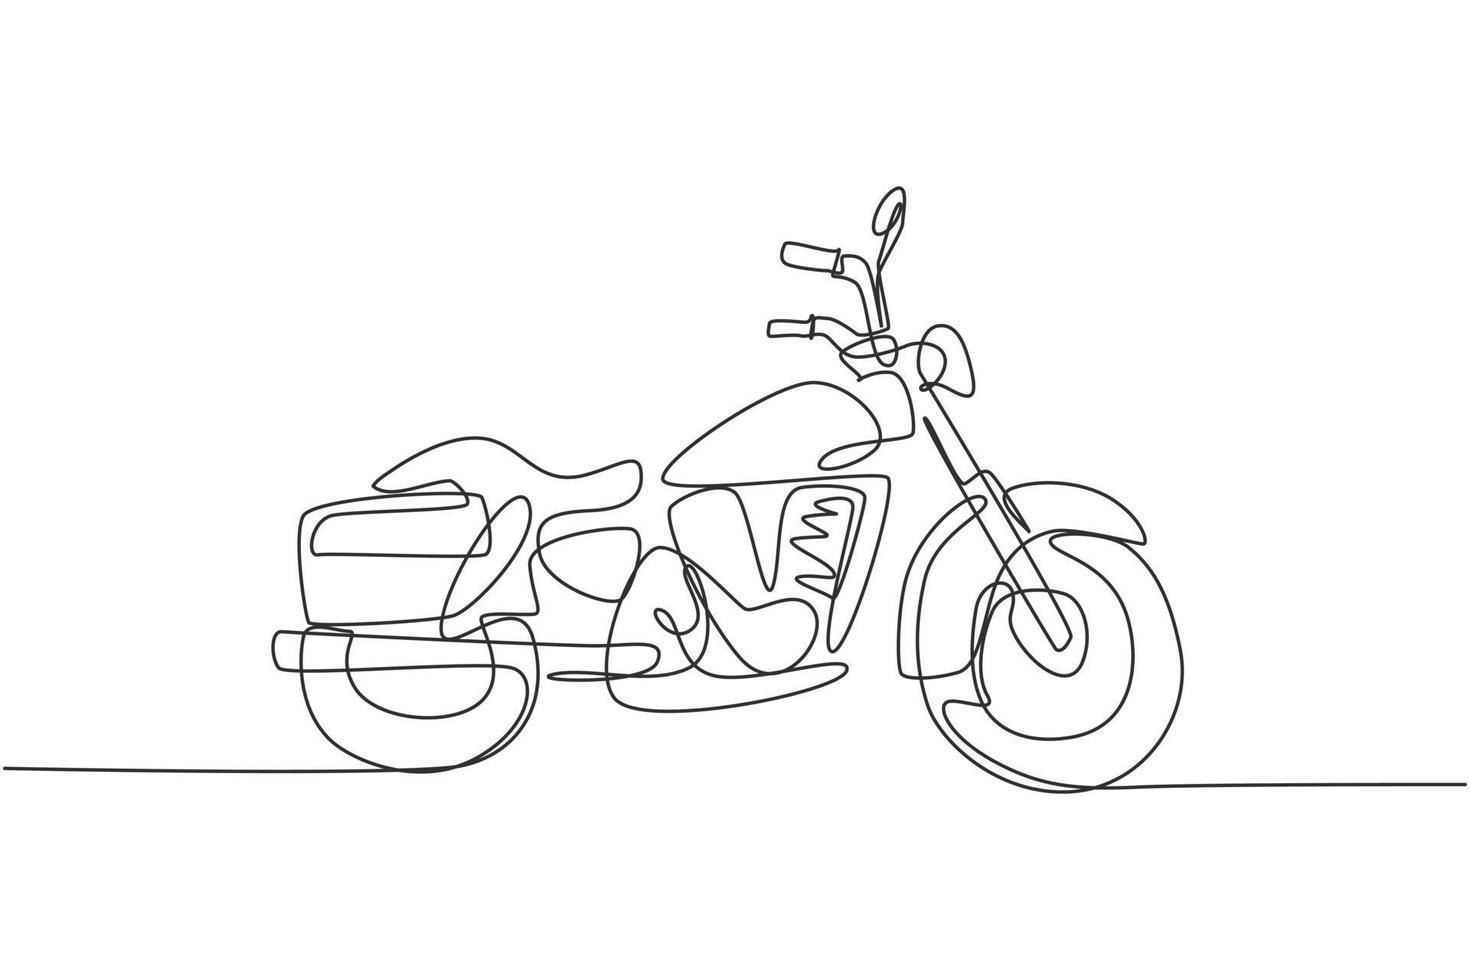 einzelne durchgehende Strichzeichnung des alten klassischen Vintage-Motorradsymbols. Retro-Motorrad-Transportkonzept eine Linie zeichnen Design Vektorgrafik Illustration vektor